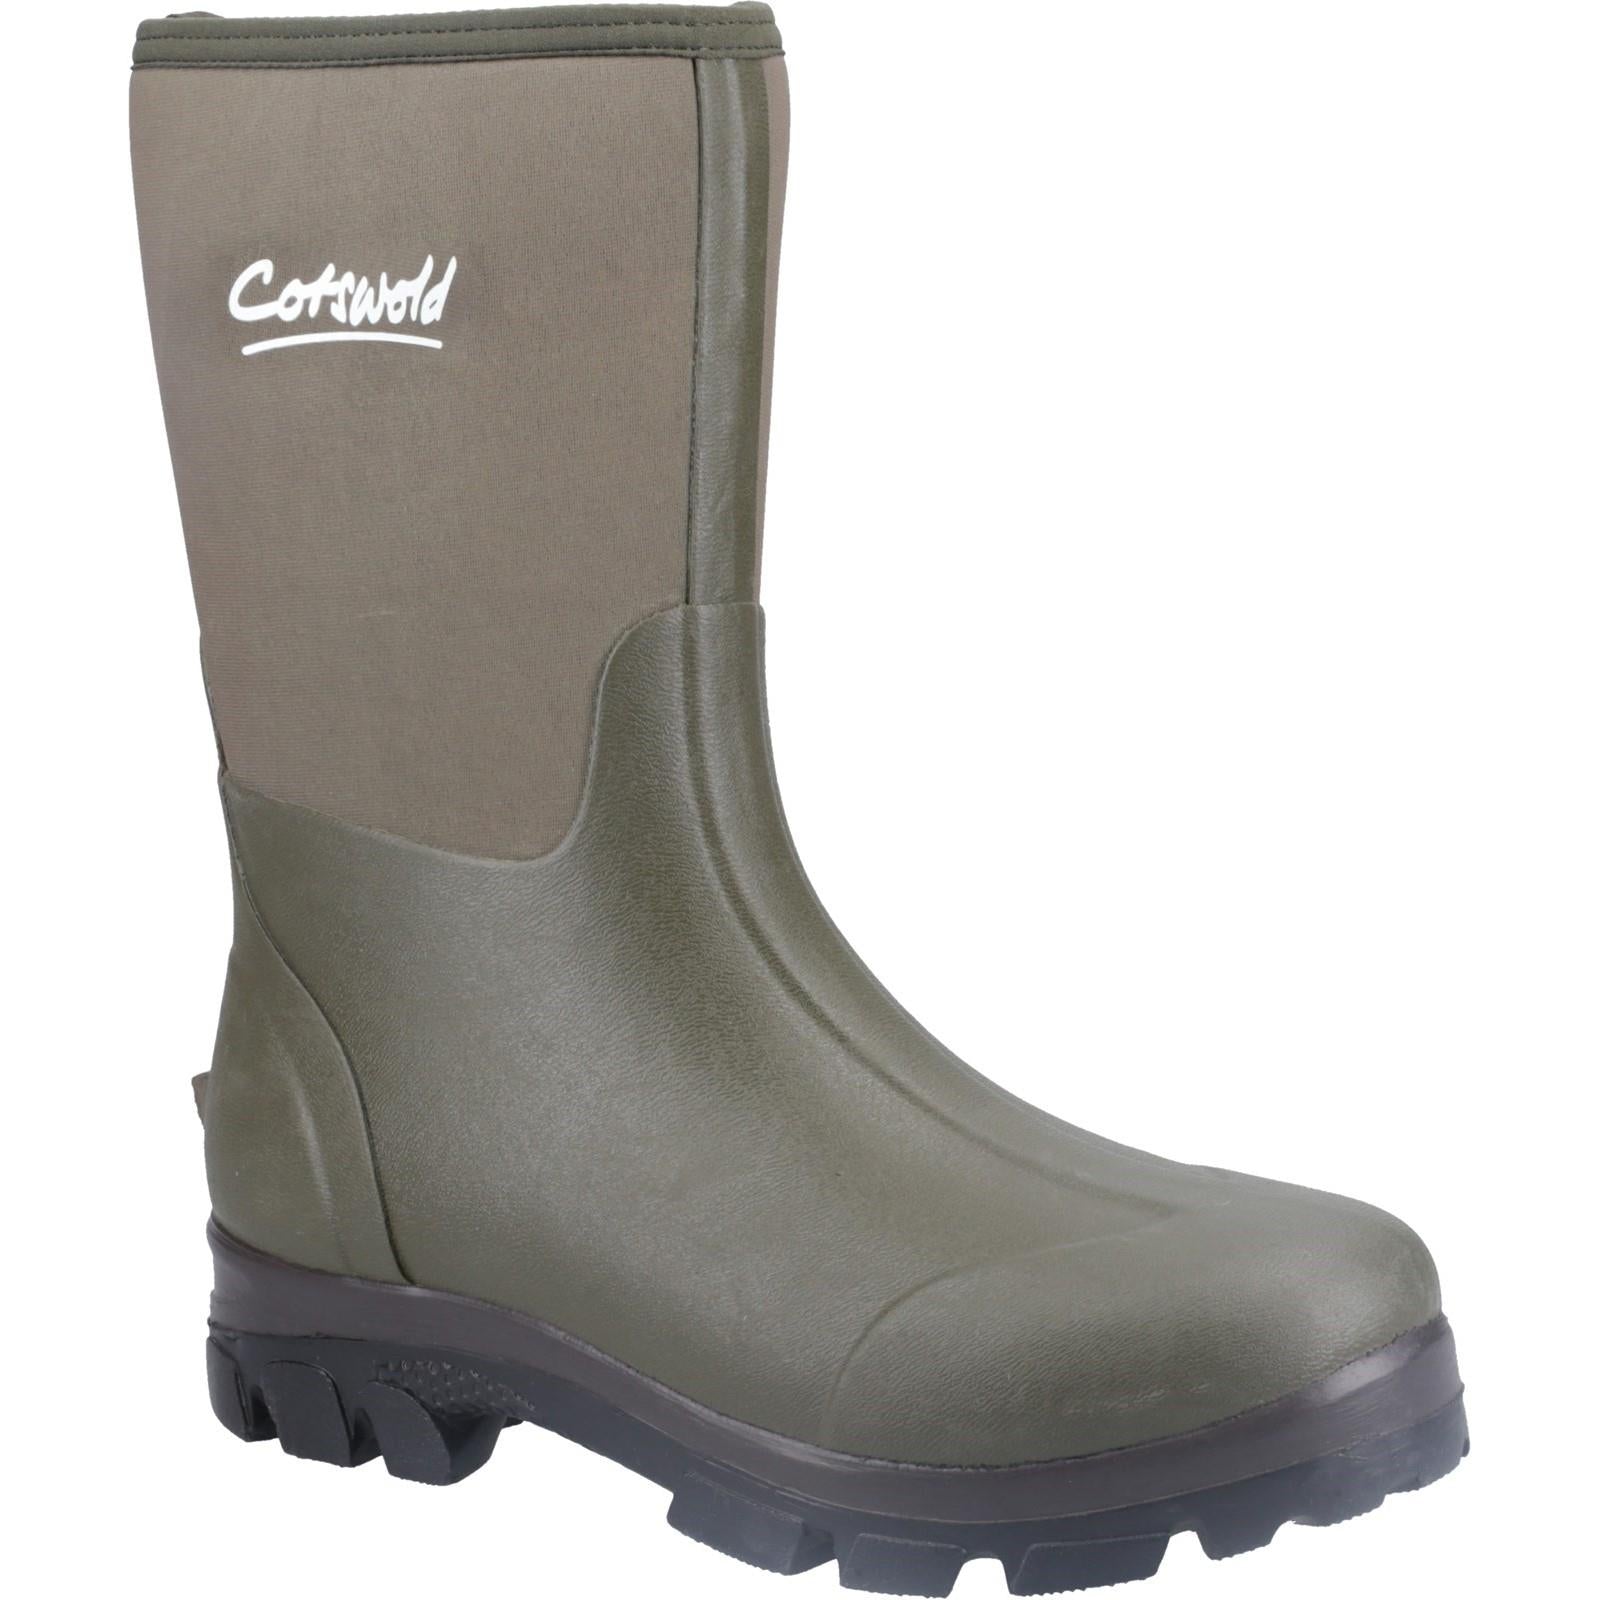 Cotswold Kensington green neoprene waterproof wellington boots